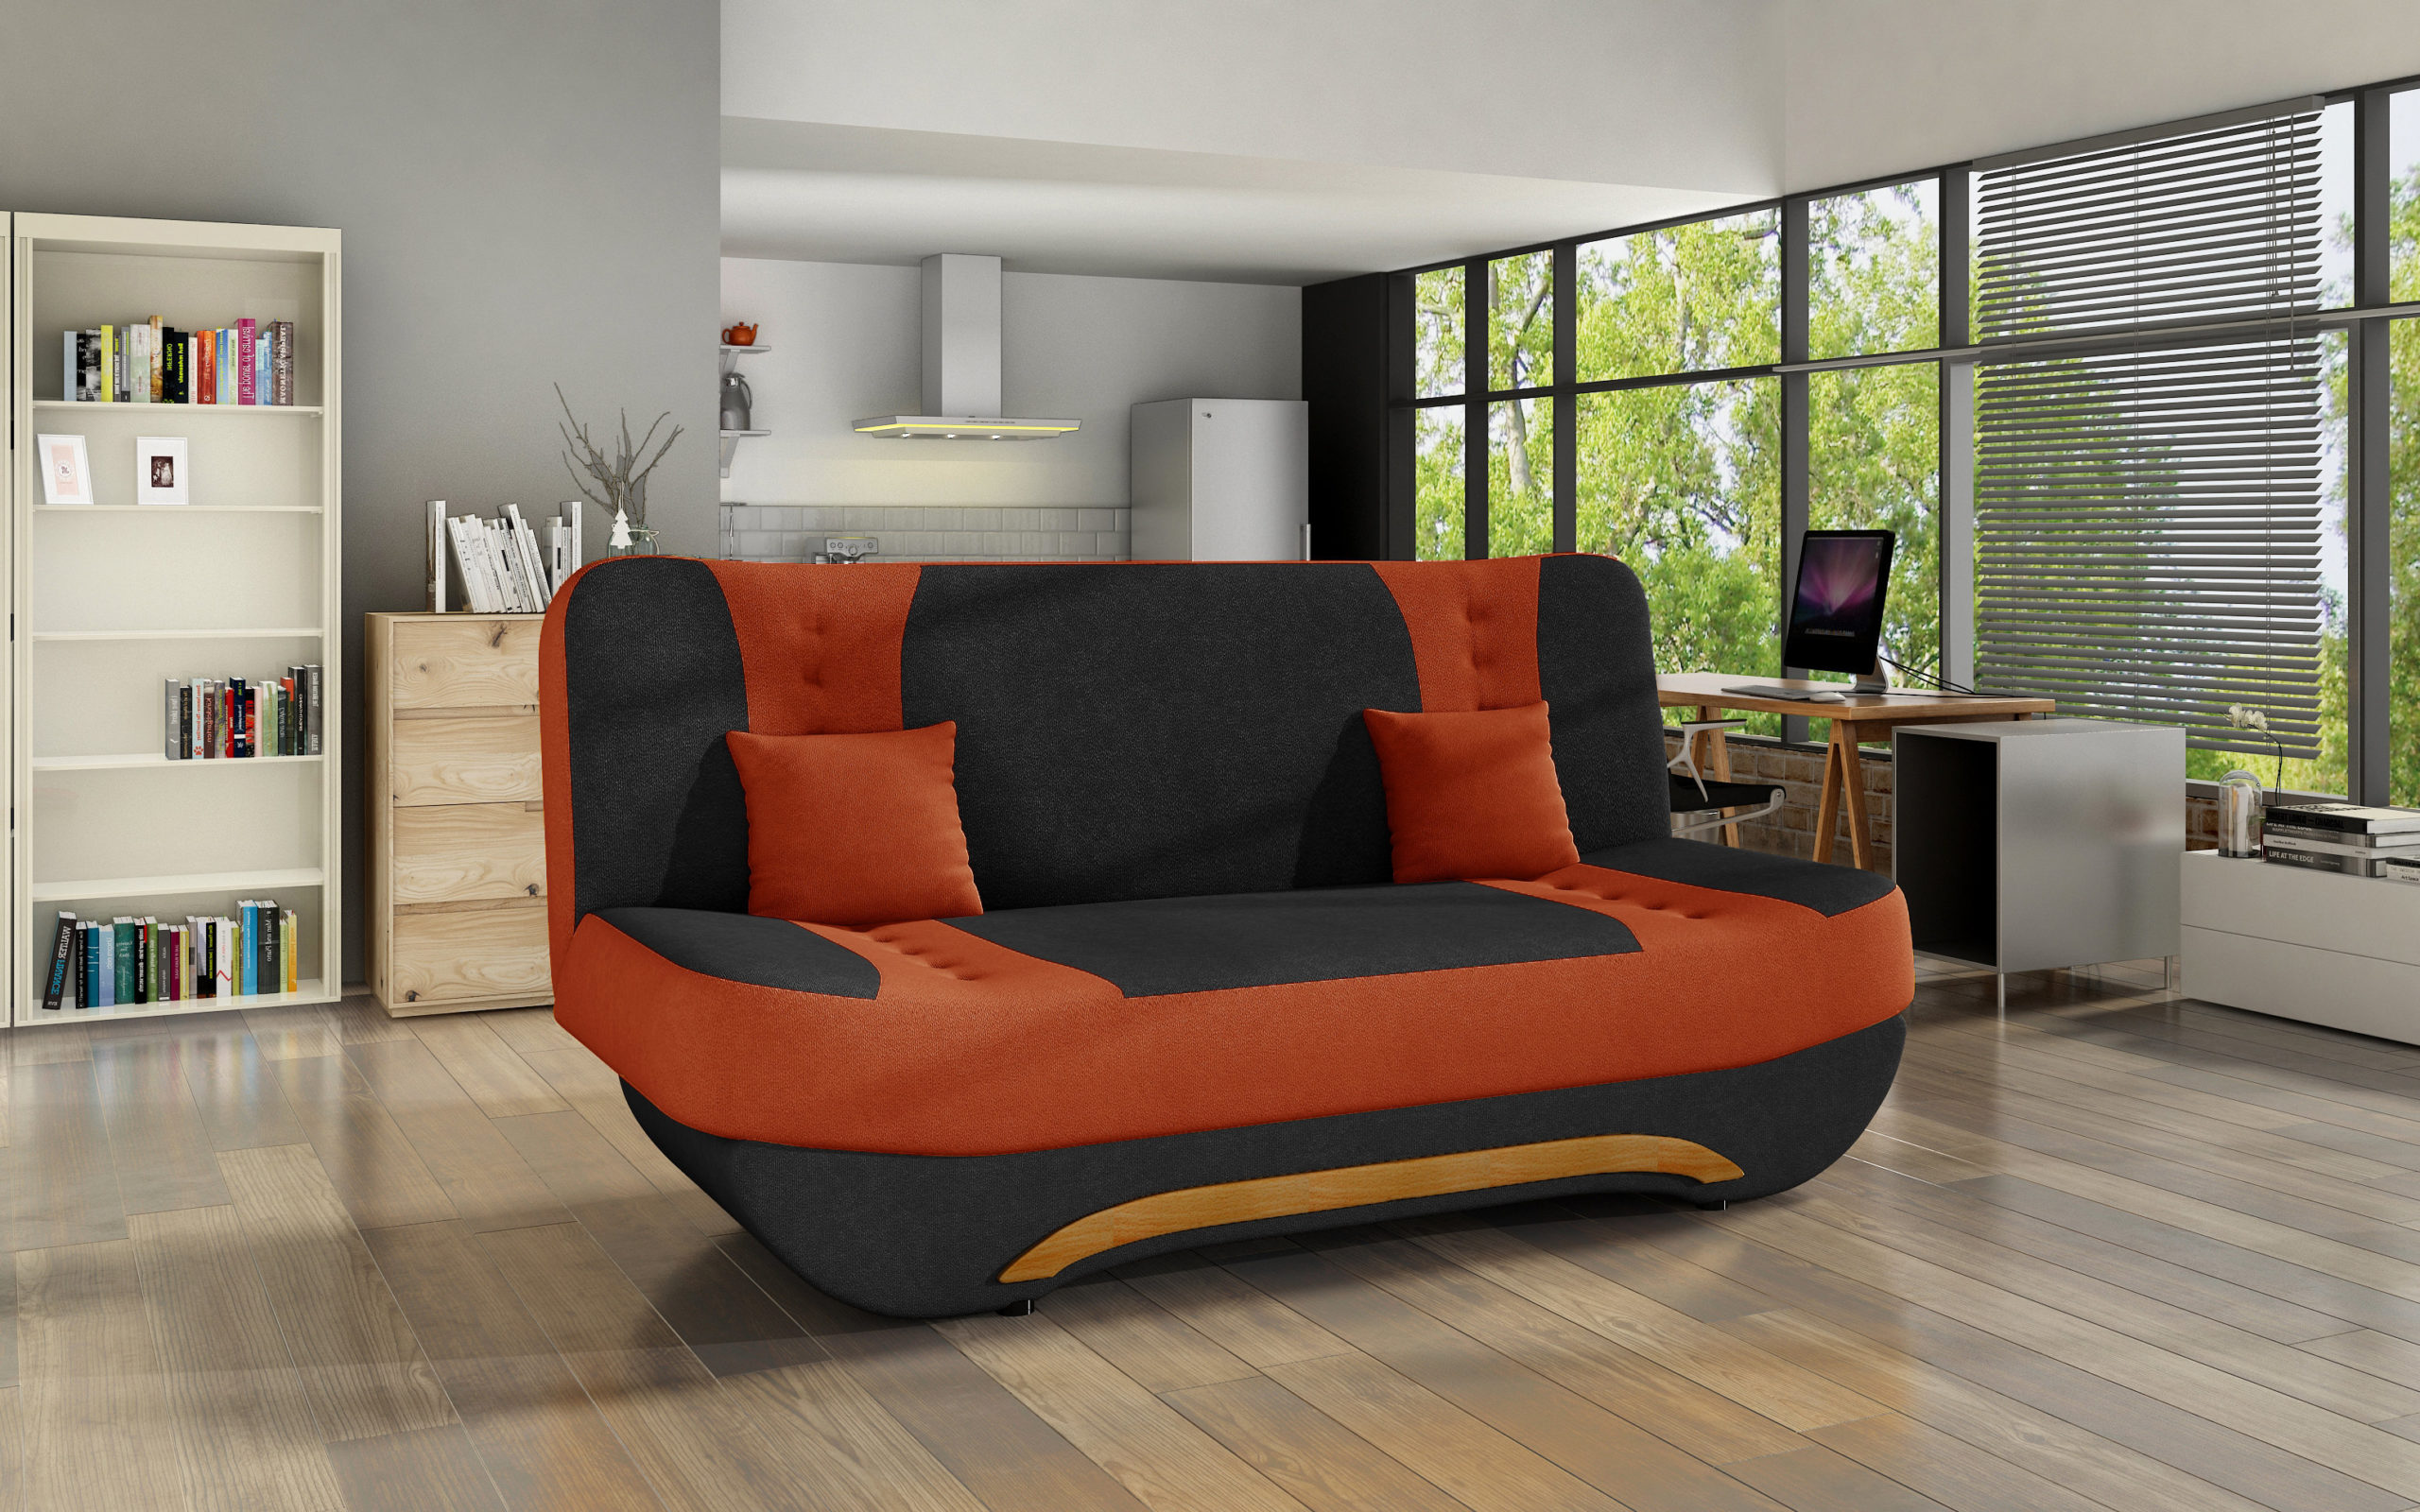 модели диванов для сна в маленькую комнату